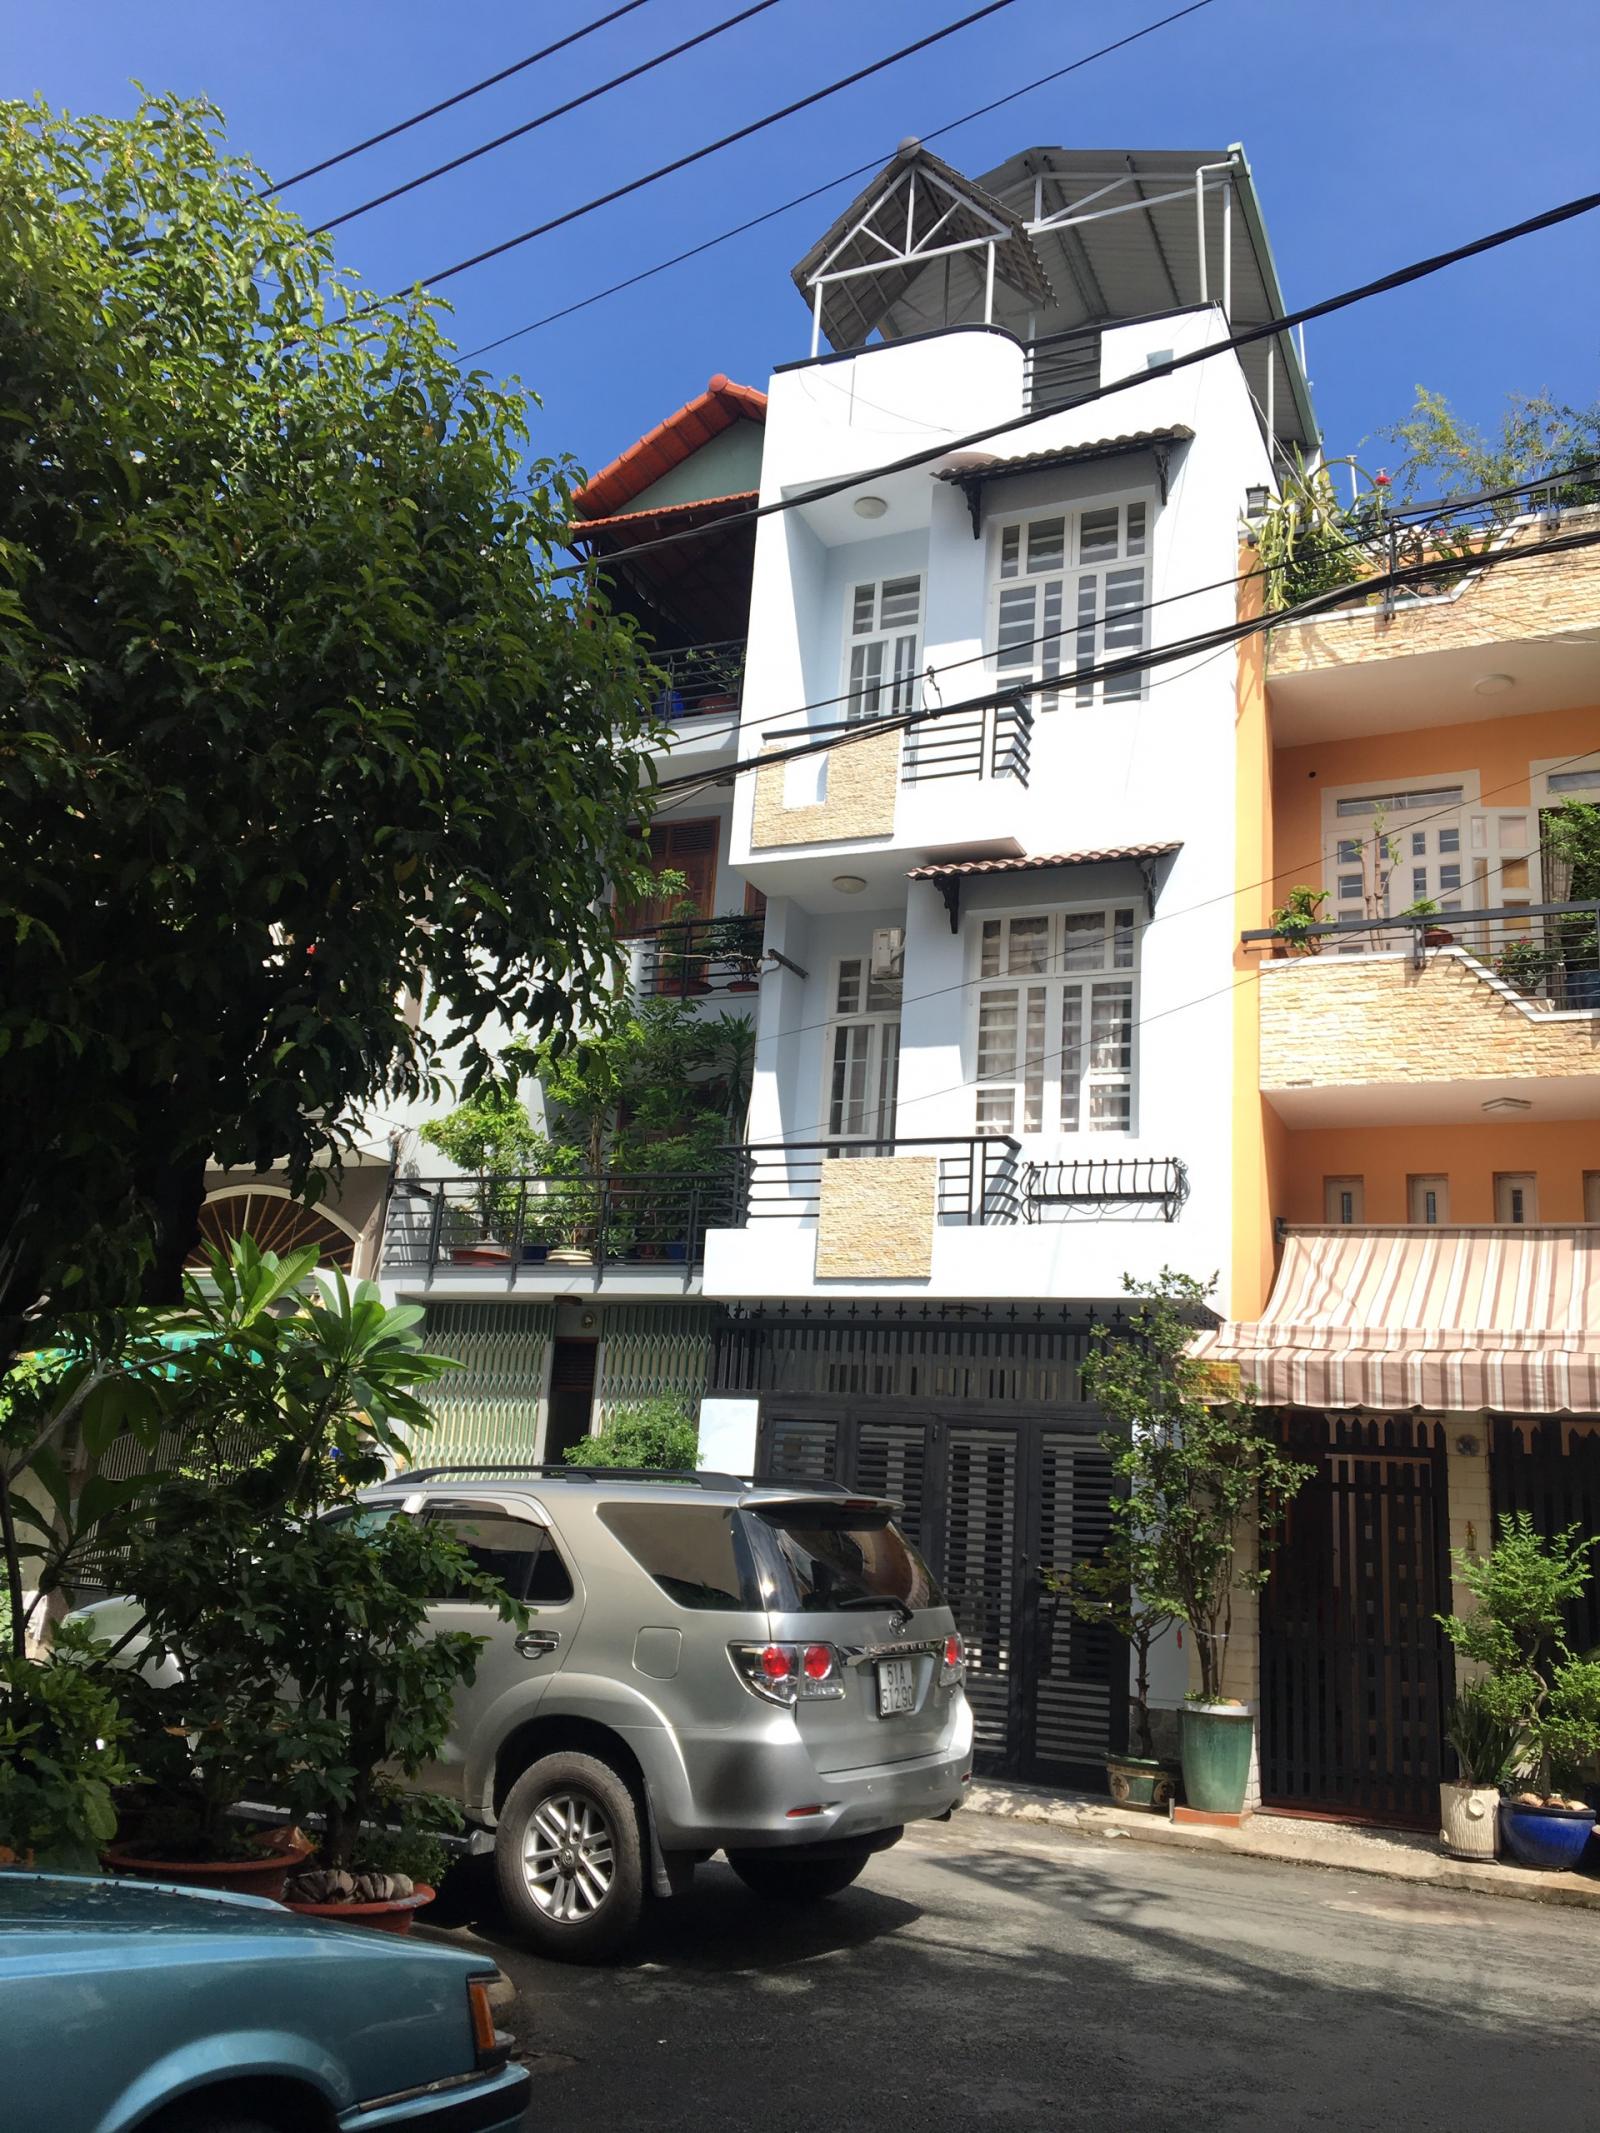 5 căn nhà giá tốt nhất khu Tây Thạnh, Quận Tân Phú tháng 06/2019 LH 0789.636.907 gặp Trung Nguyen để được tư vấn miễn phí.